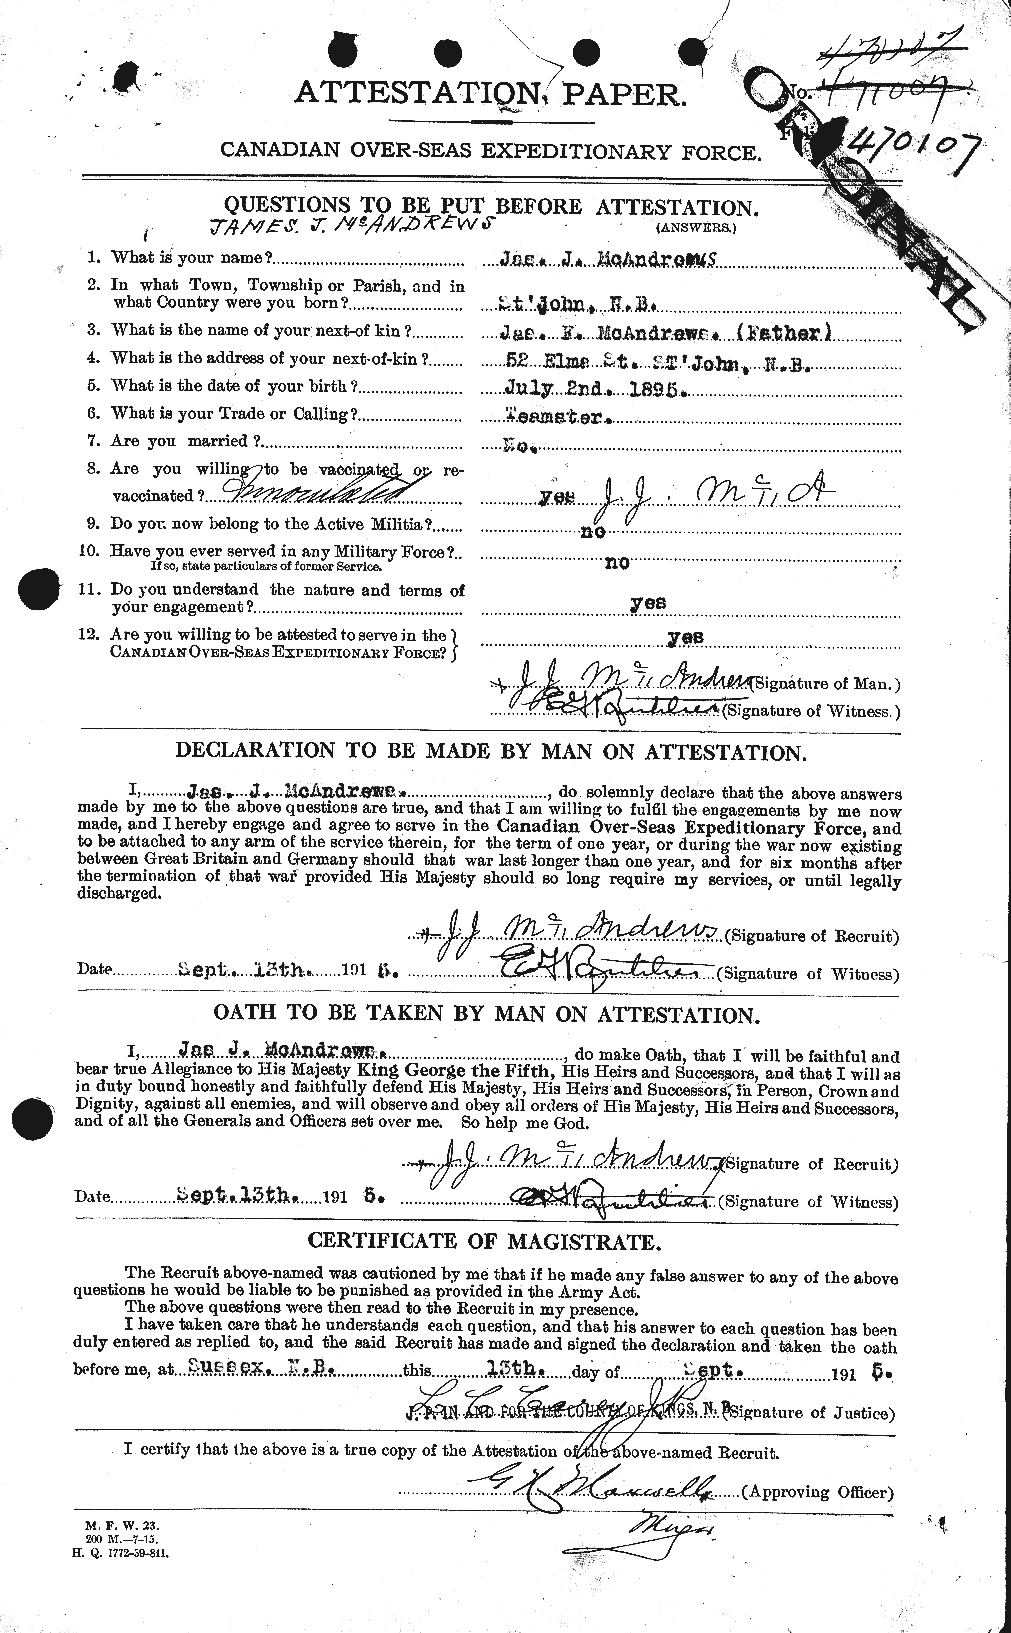 Dossiers du Personnel de la Première Guerre mondiale - CEC 131402a